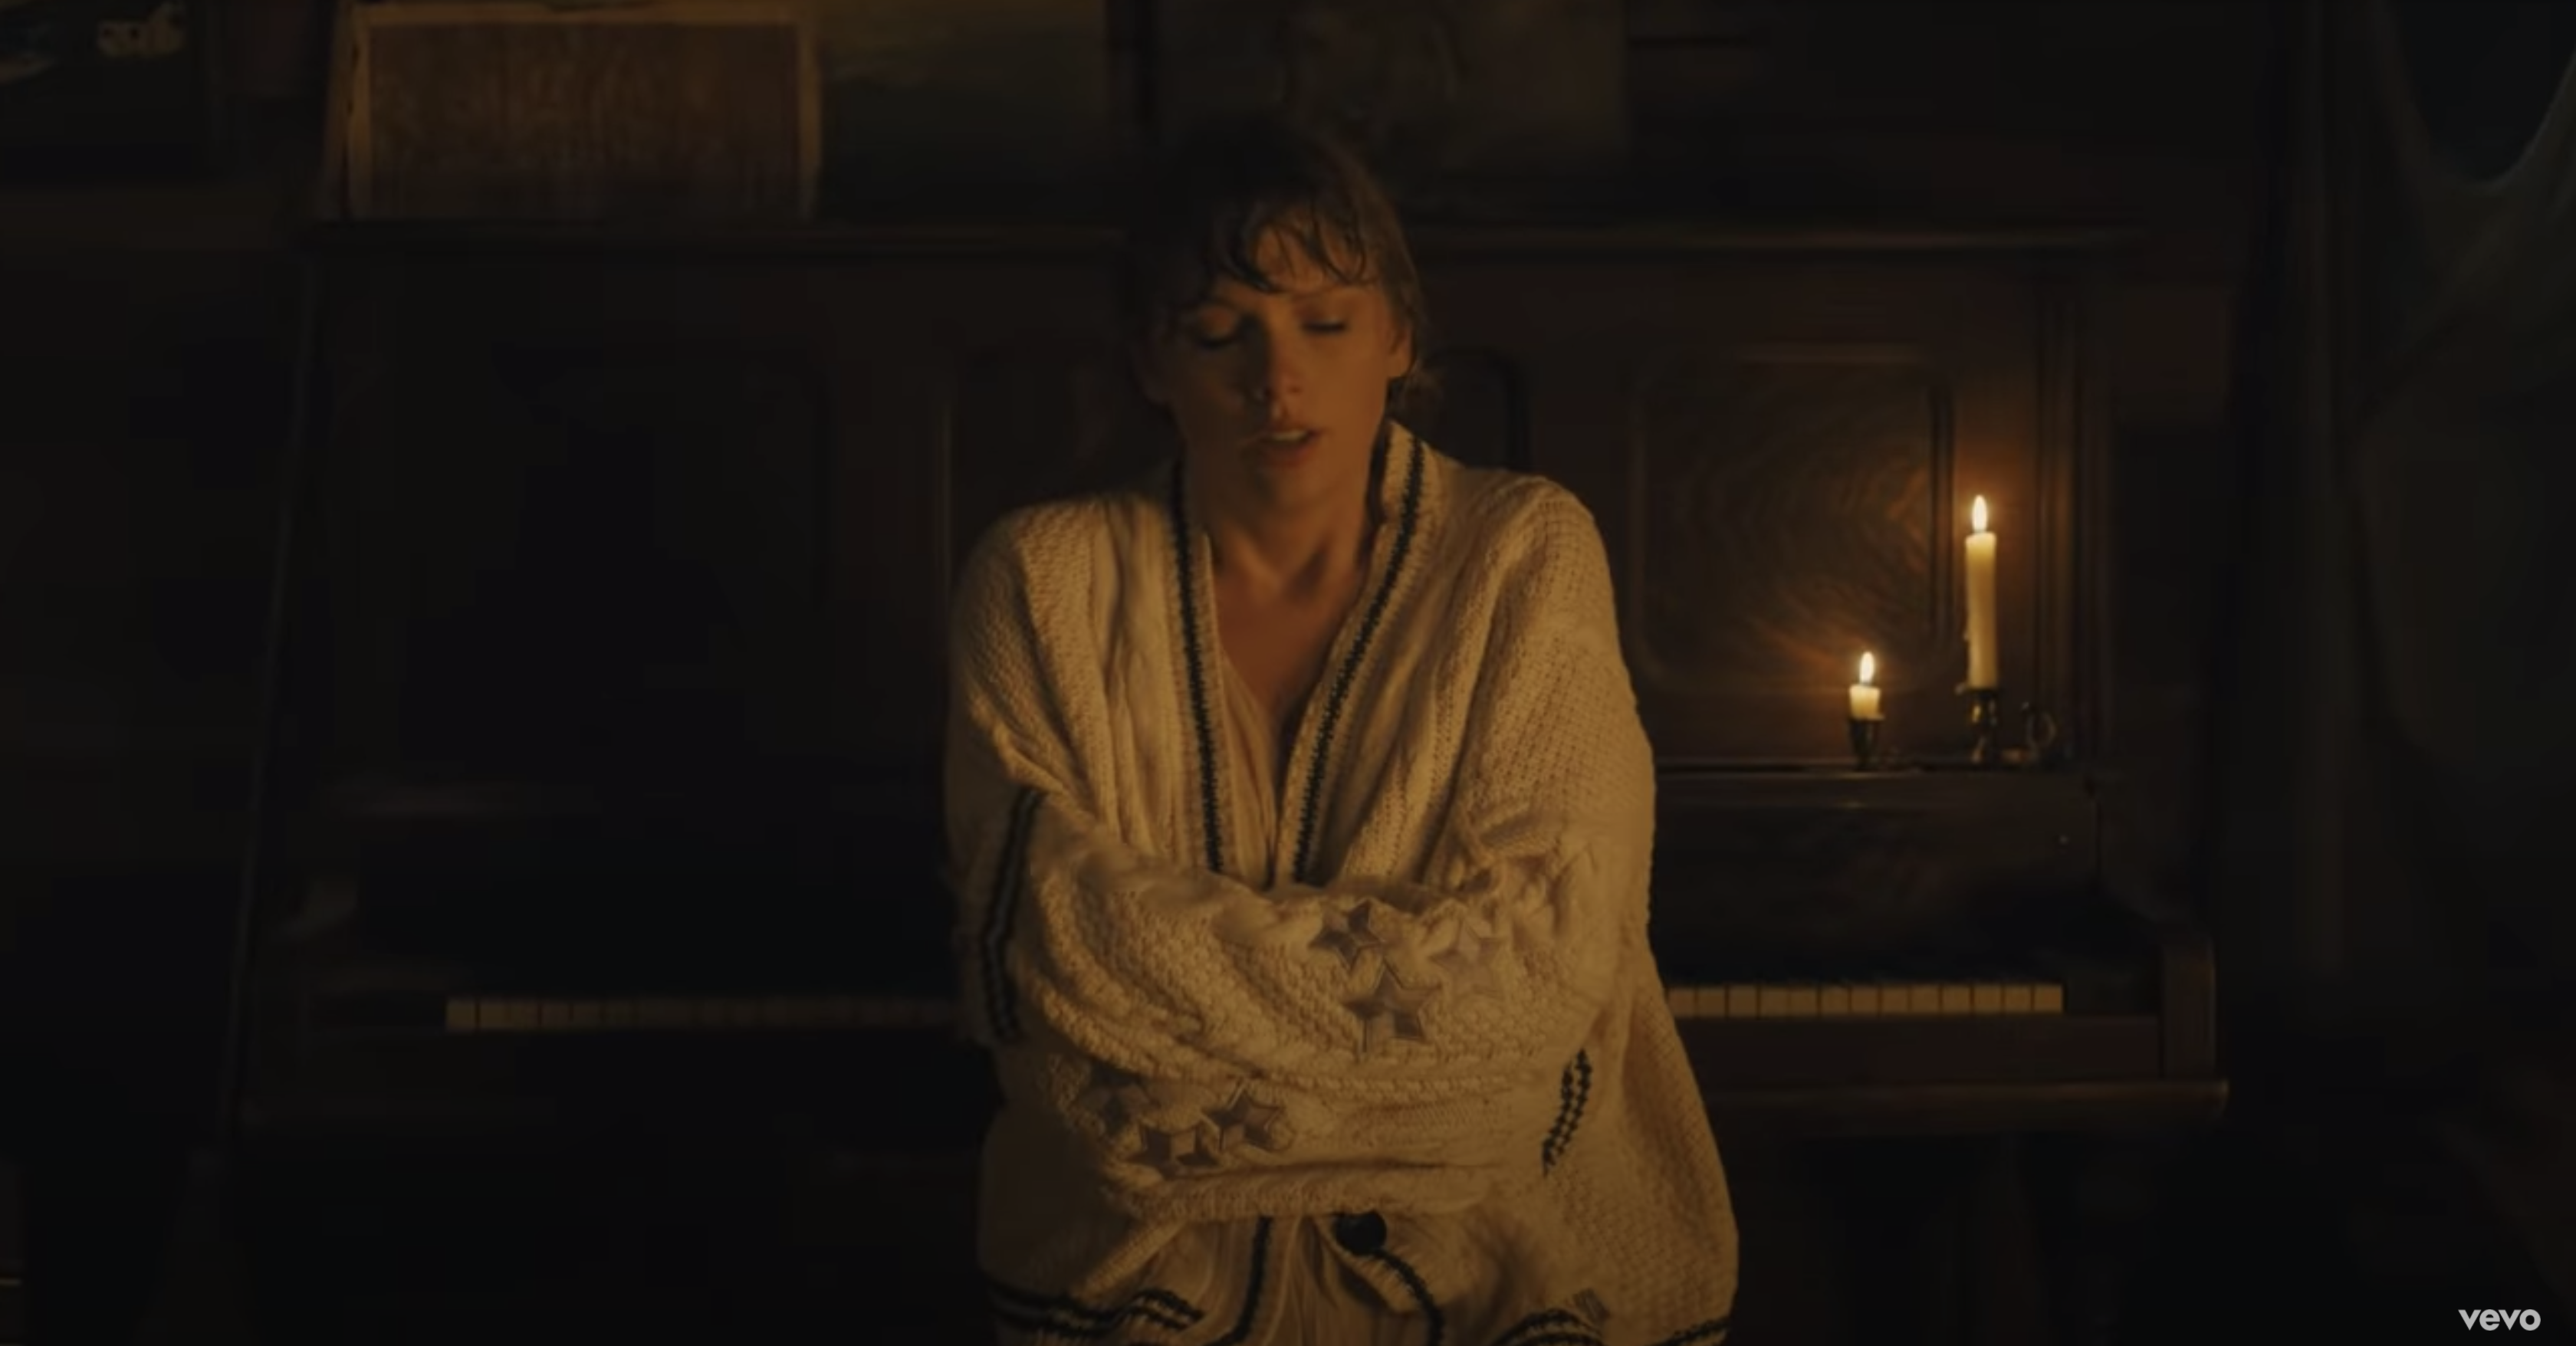 Puedes comprar el suéter exacto que Taylor Swift usa en su "Cardigan" video musical